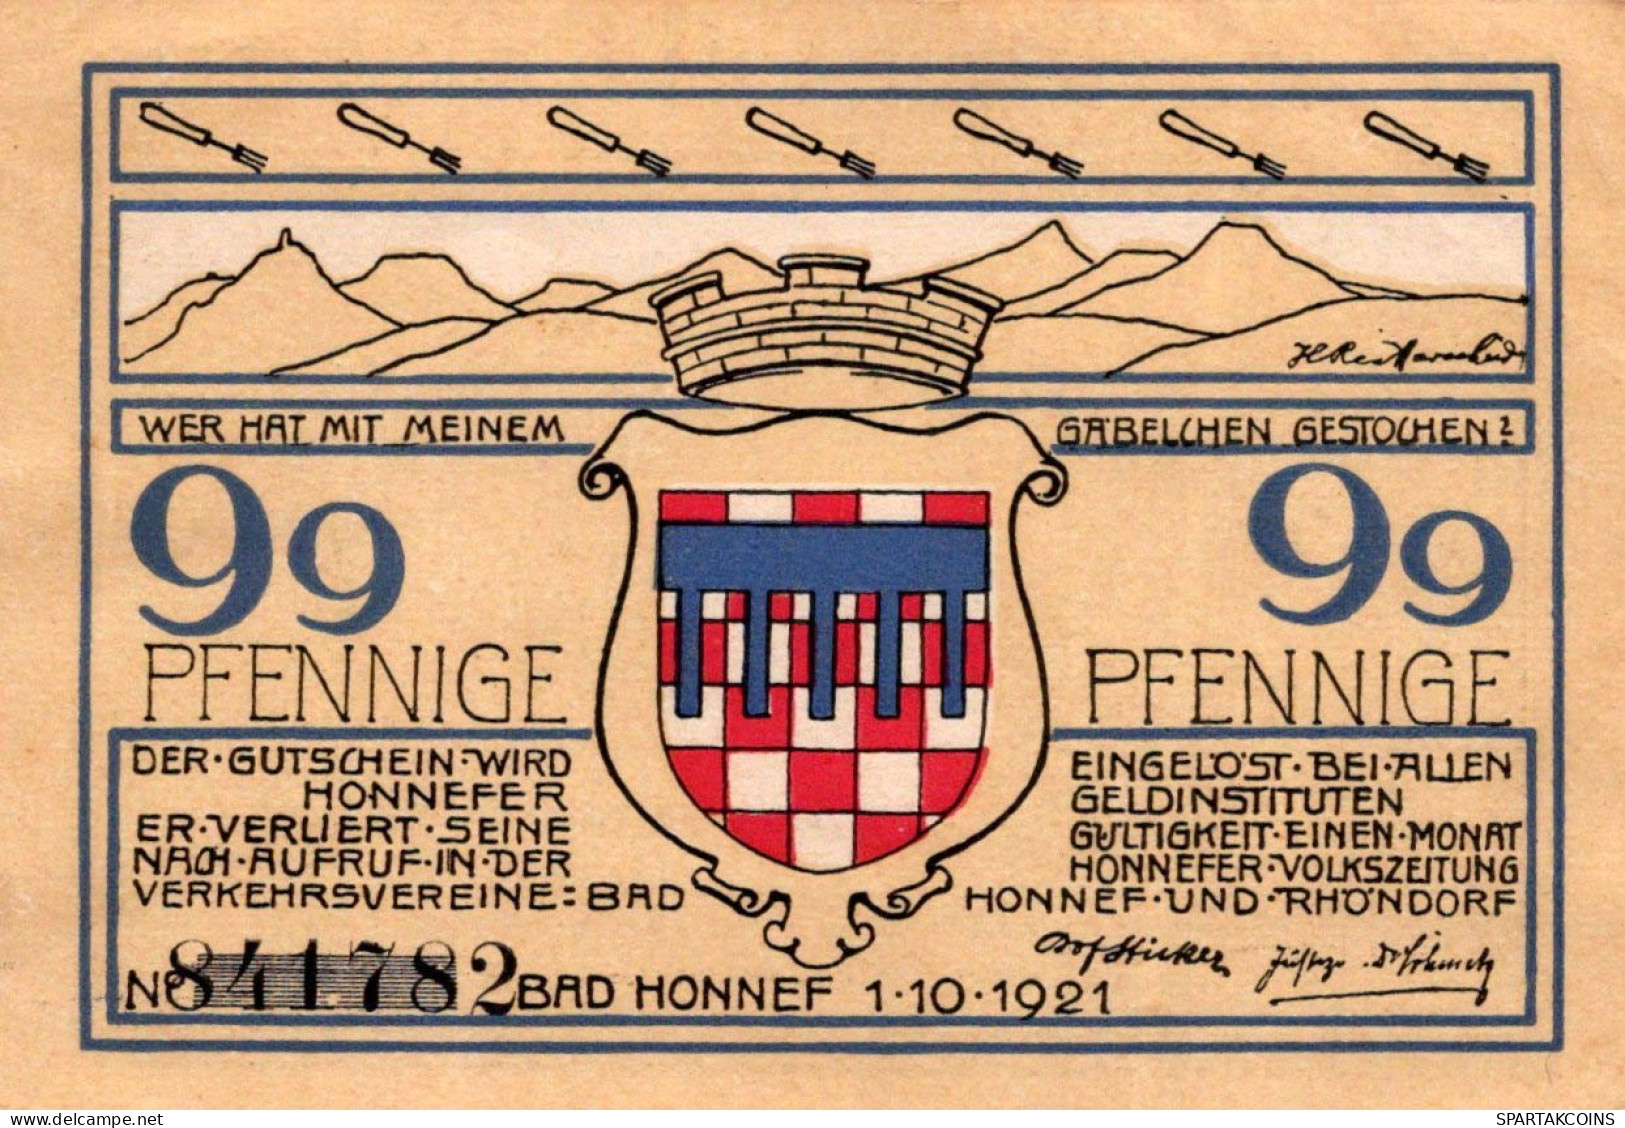 99 PFENNIG 1921 Stadt BAD HONNEF Rhine DEUTSCHLAND Notgeld Banknote #PF999 - [11] Local Banknote Issues